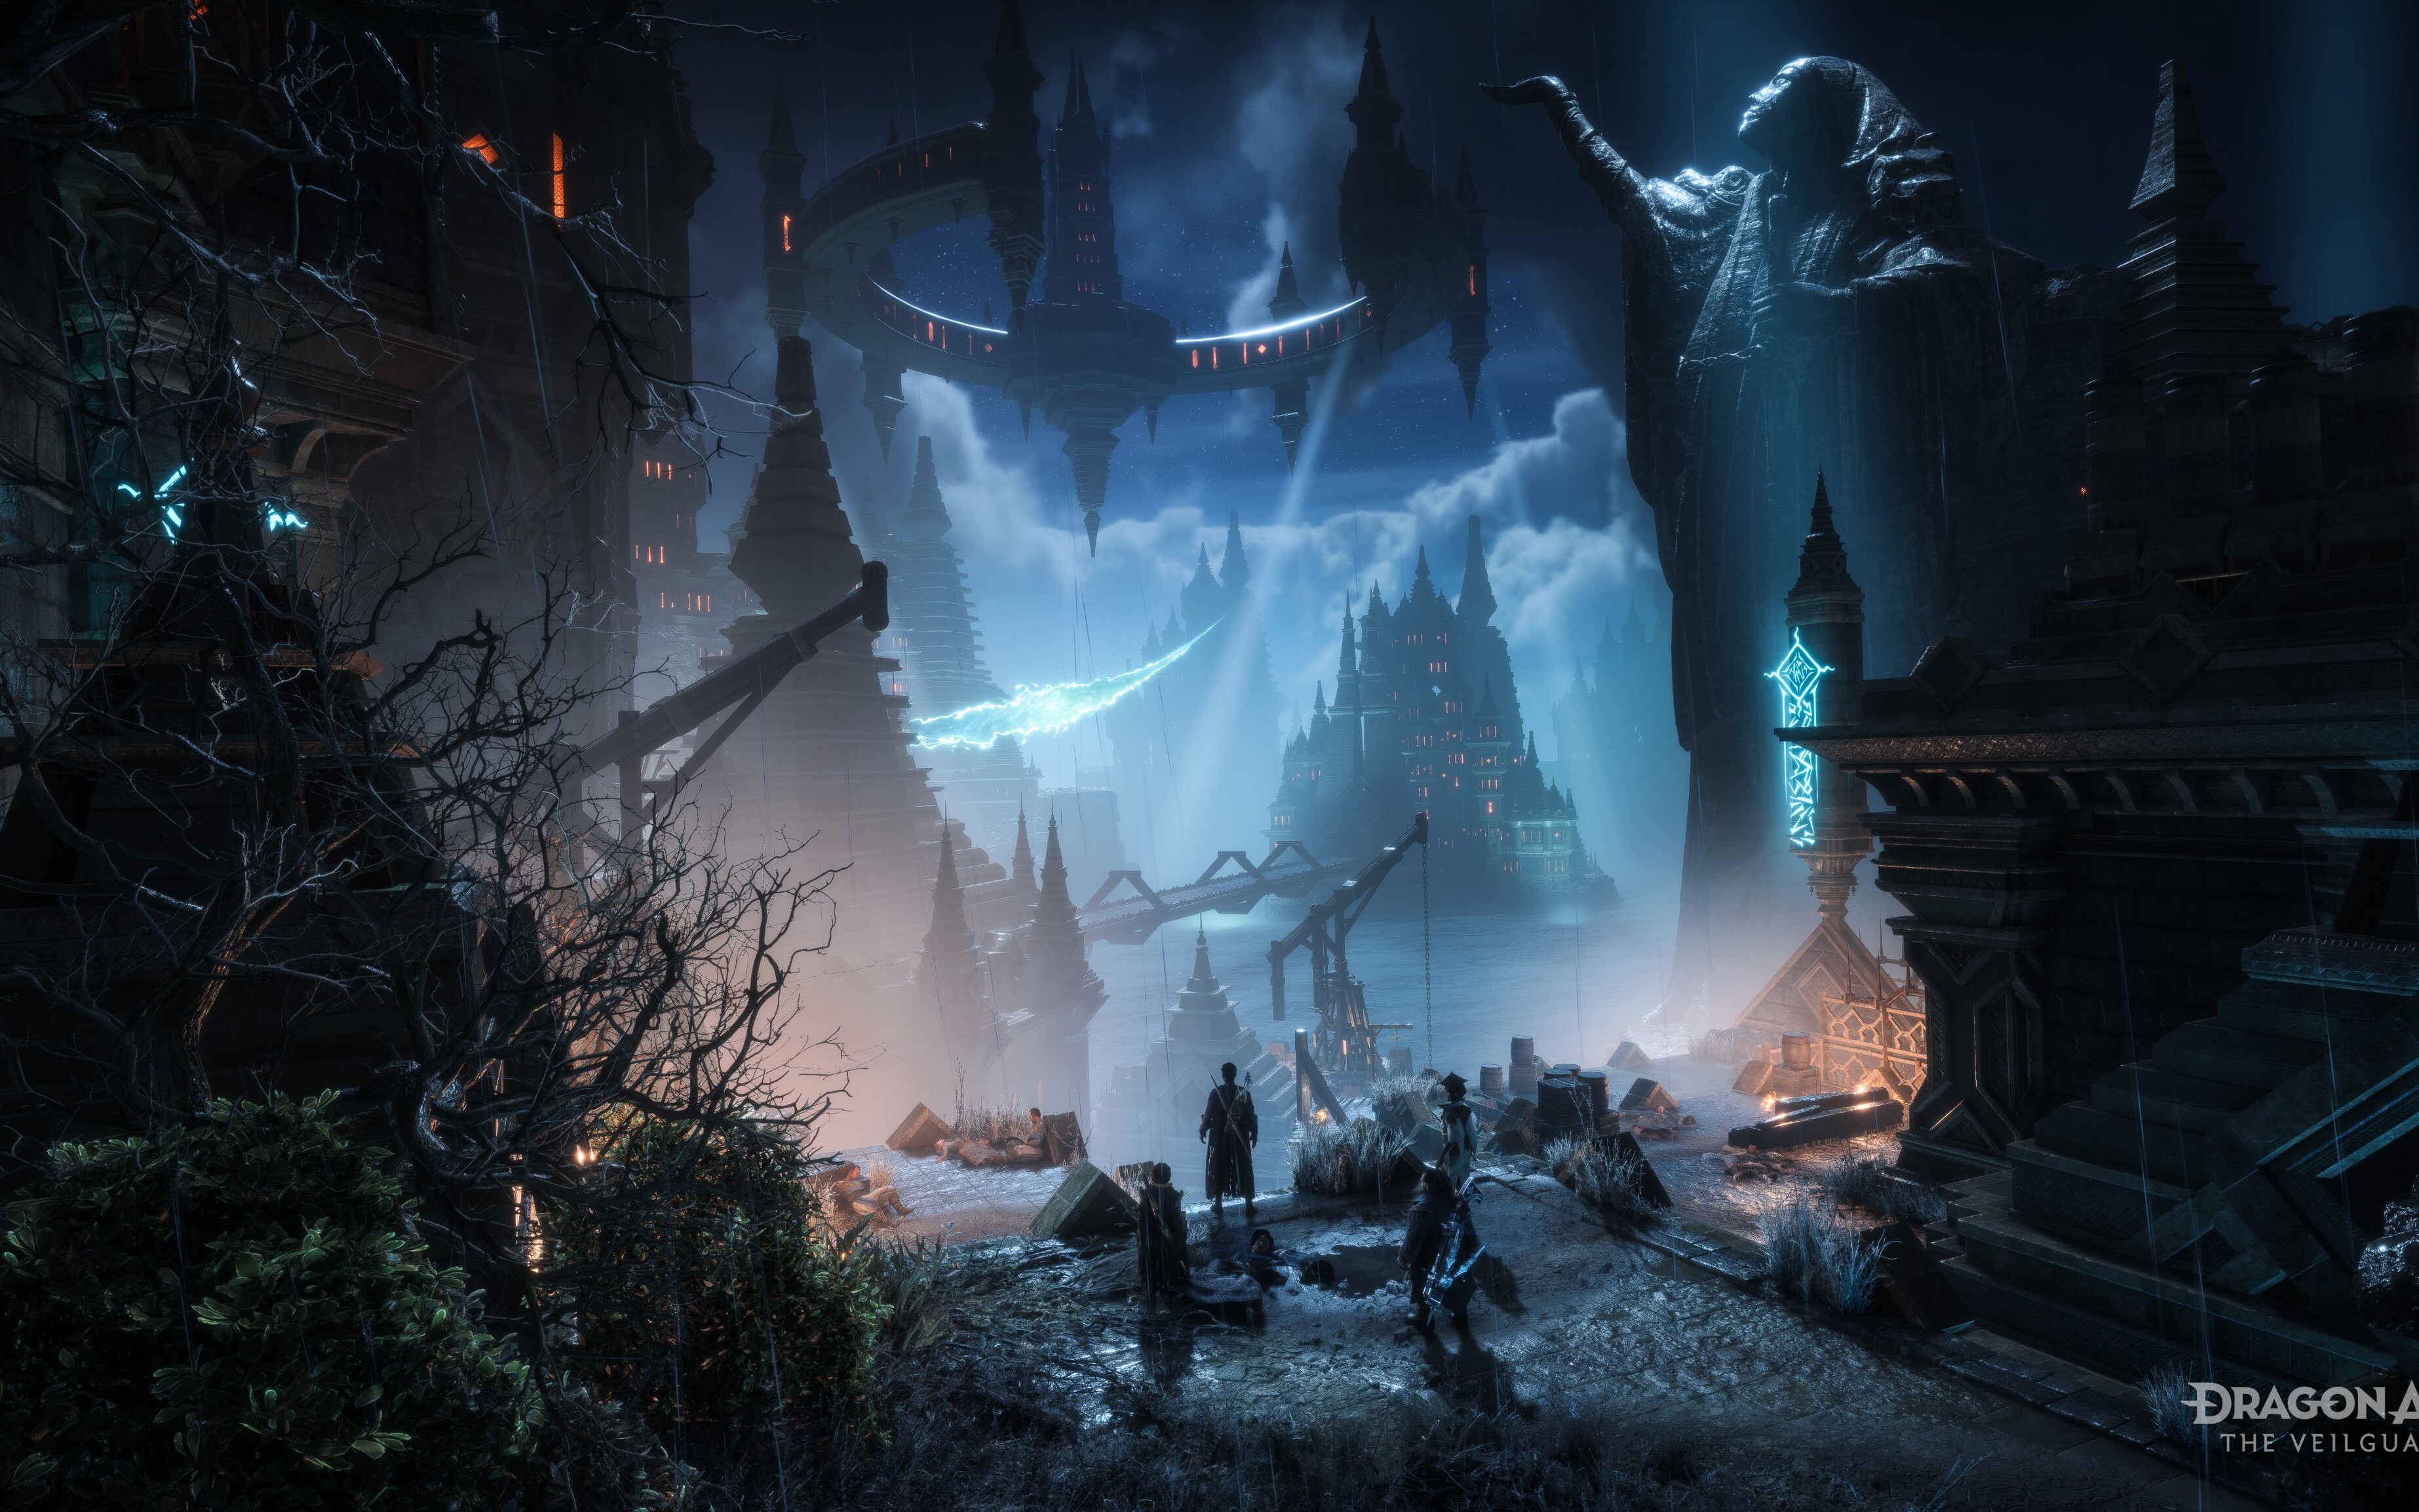 Dragon Age: The Veilguard - miasto Minrathous